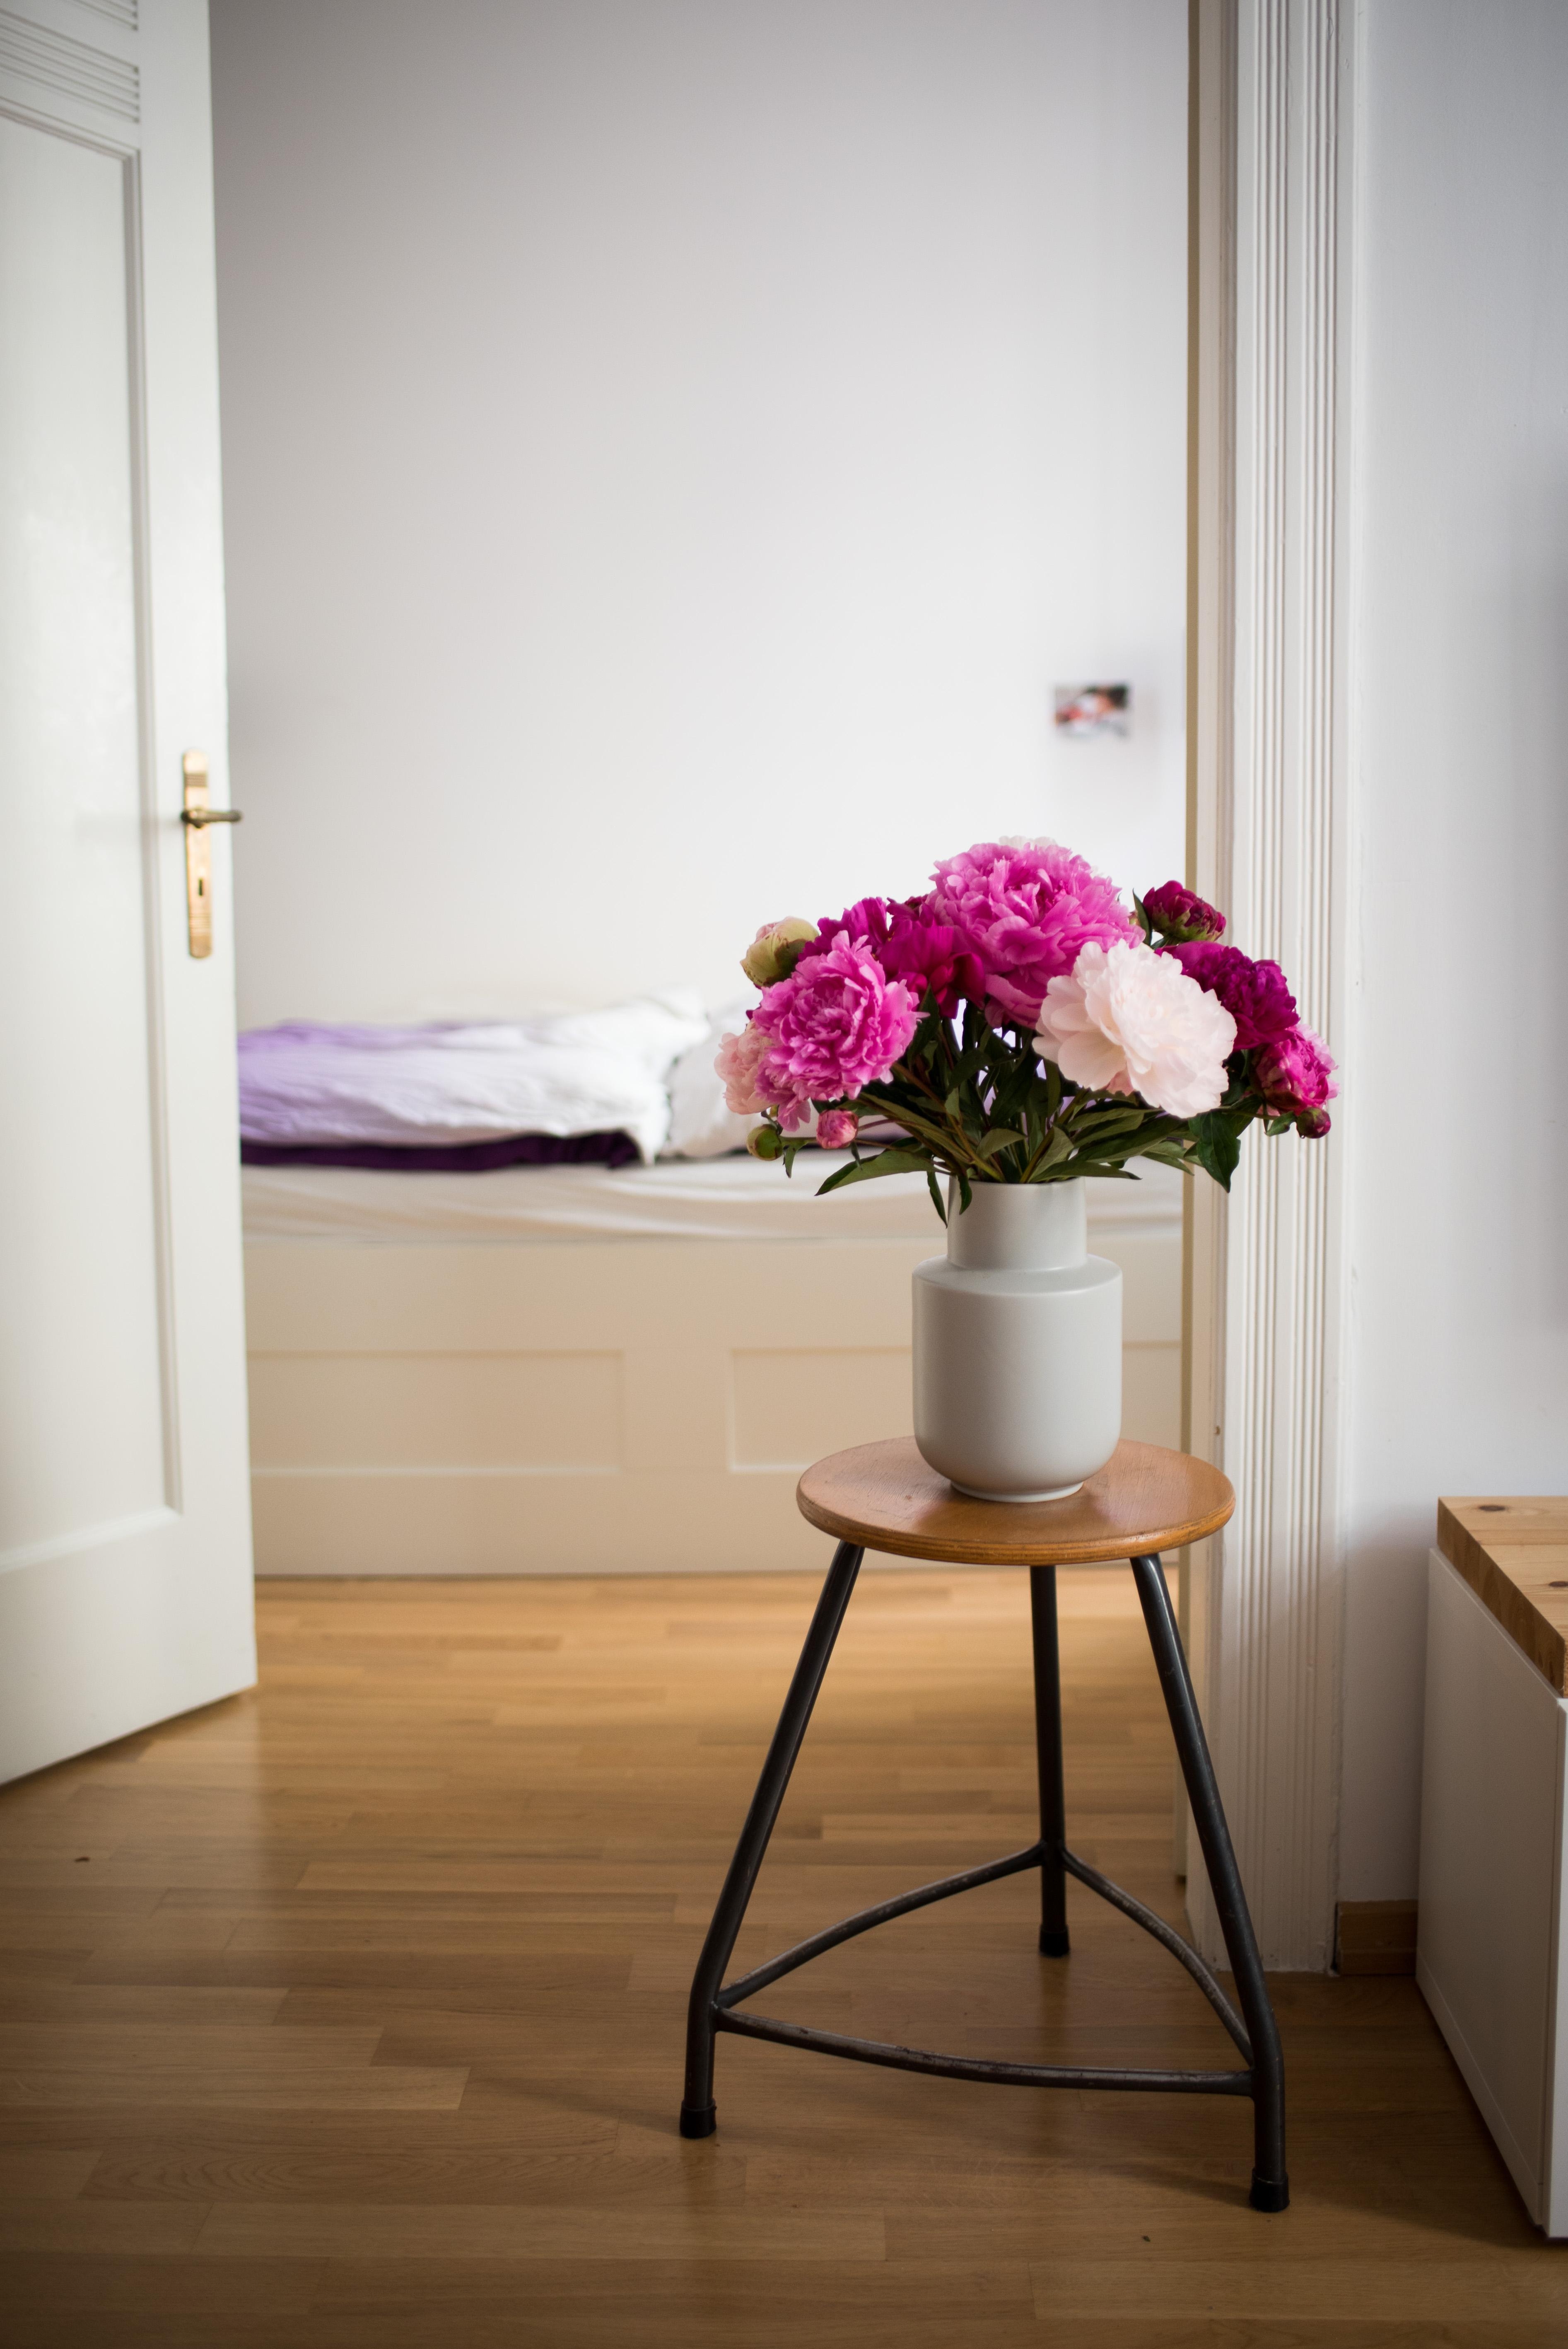 Freitagsblumen! #bedroom #schlafzimmer #interiorinspo #interiorstyle #vintage #altbau